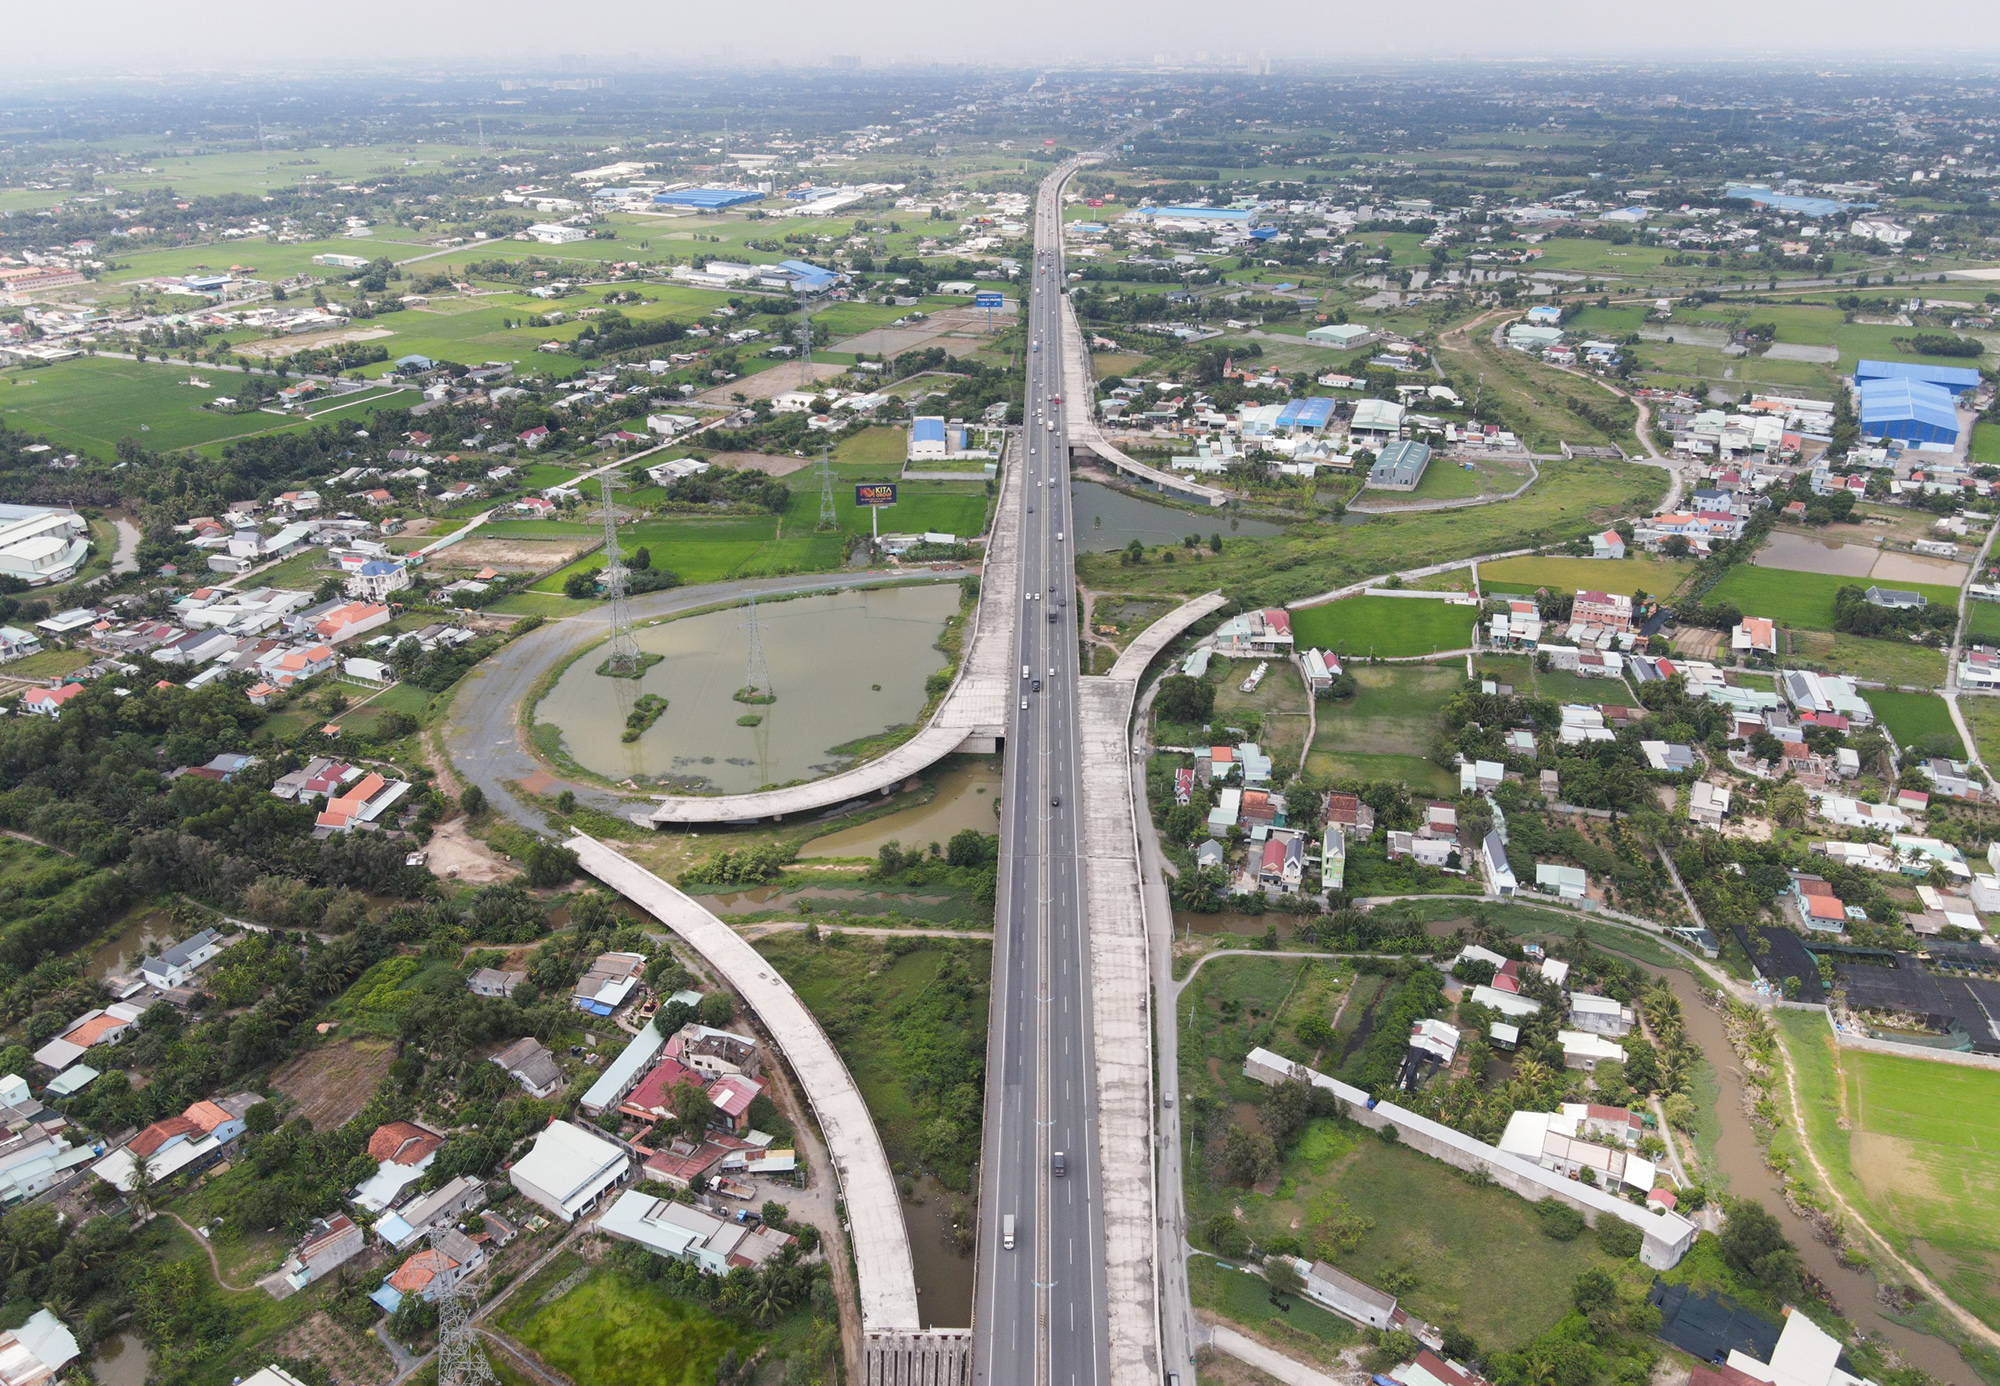 Cao tốc Bến Lức - Long Thành dài gần 58km, vốn đầu tư hơn 31.000 tỷ đồng, được khởi công tháng 7/2014, đi qua các tỉnh Long An, TP.HCM và Đồng Nai. Đây là dự án đường bộ cao tốc dài và lớn nhất miền Nam, dự kiến thông xe cuối năm 2018. Điểm đầu của cao tốc đi qua huyện Bến Lức (Long An) dài gần 5km, kết nối với cao tốc TP.HCM - Trung Lương. Tại đây, các nhánh đường dẫn kết nối 2 tuyến với nhau chỉ mới xây dựng được một số đoạn, hiện hạng mục này đang dừng thi công.